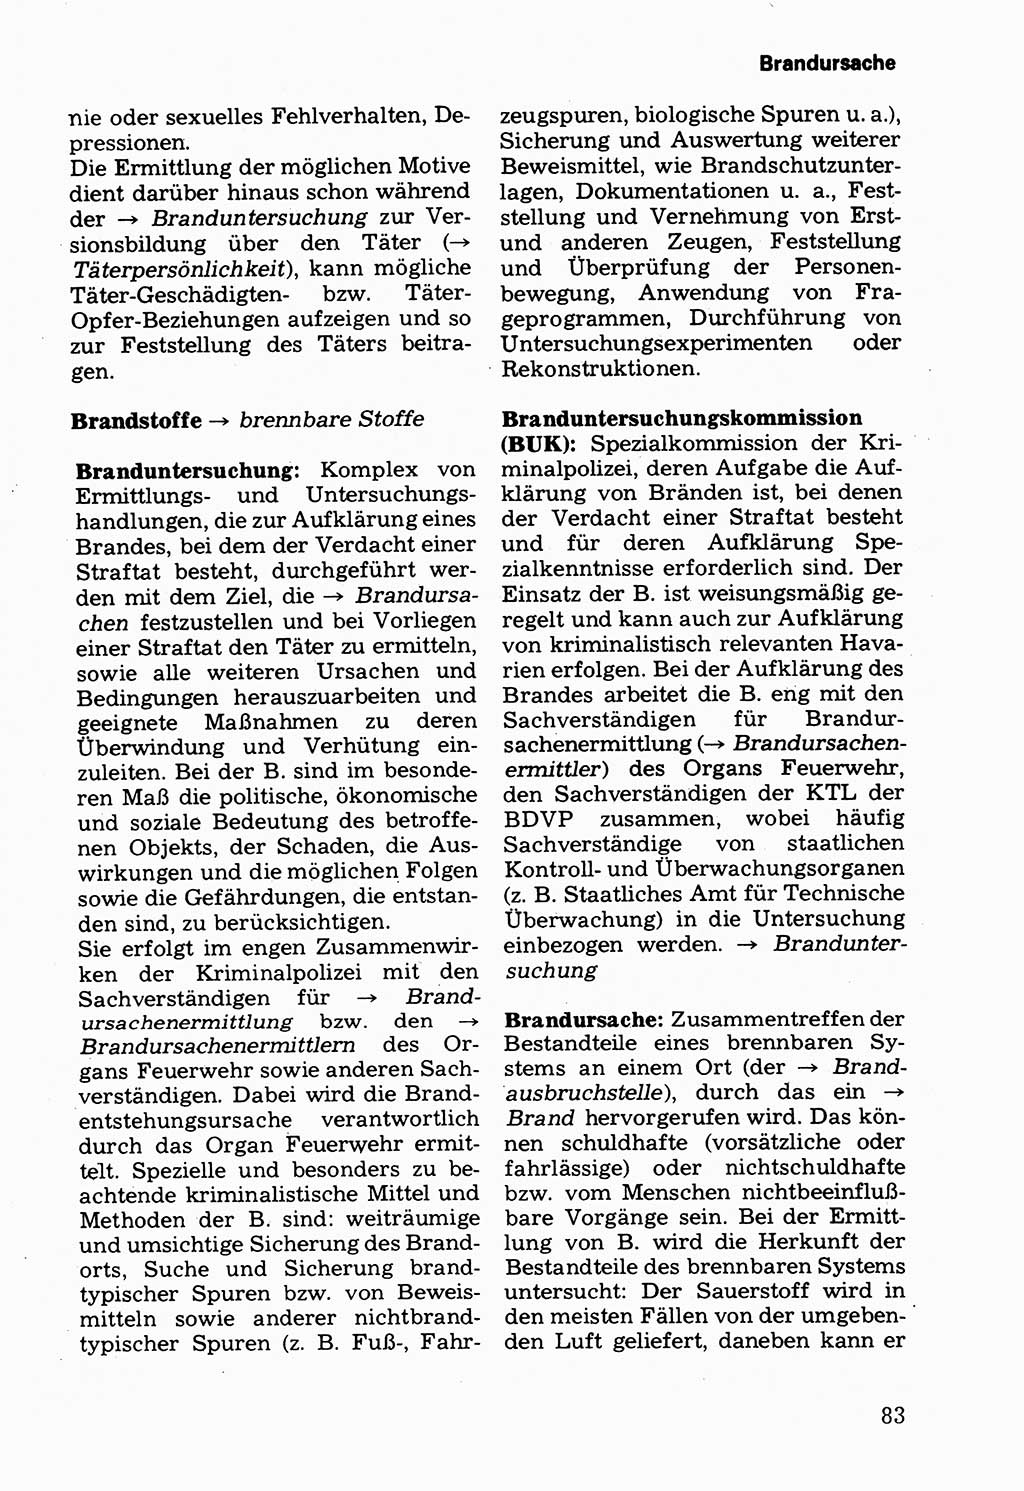 Wörterbuch der sozialistischen Kriminalistik [Deutsche Demokratische Republik (DDR)] 1981, Seite 83 (Wb. soz. Krim. DDR 1981, S. 83)